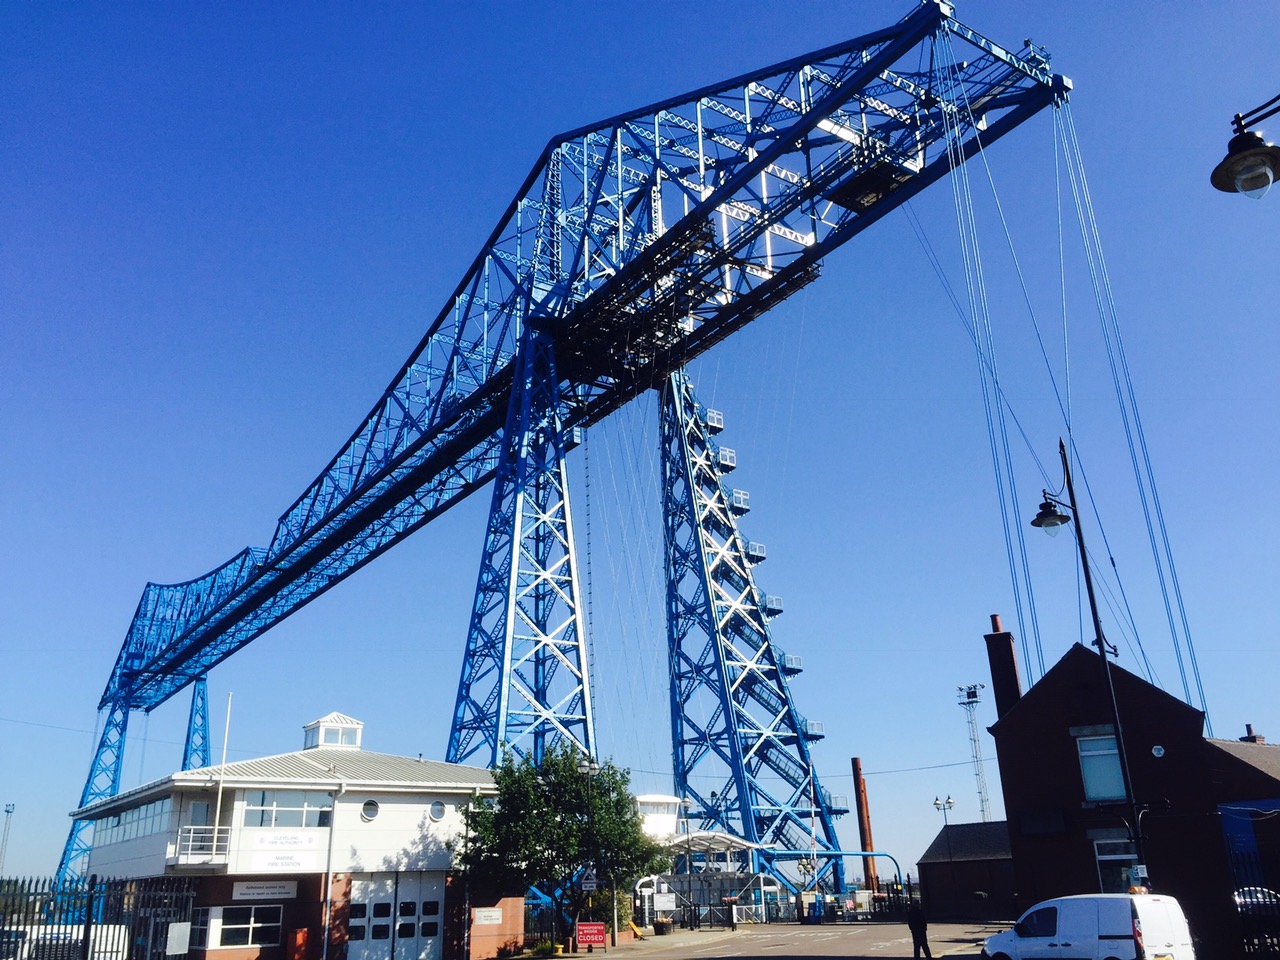 Middlesbrough's famous Transporter Bridge.